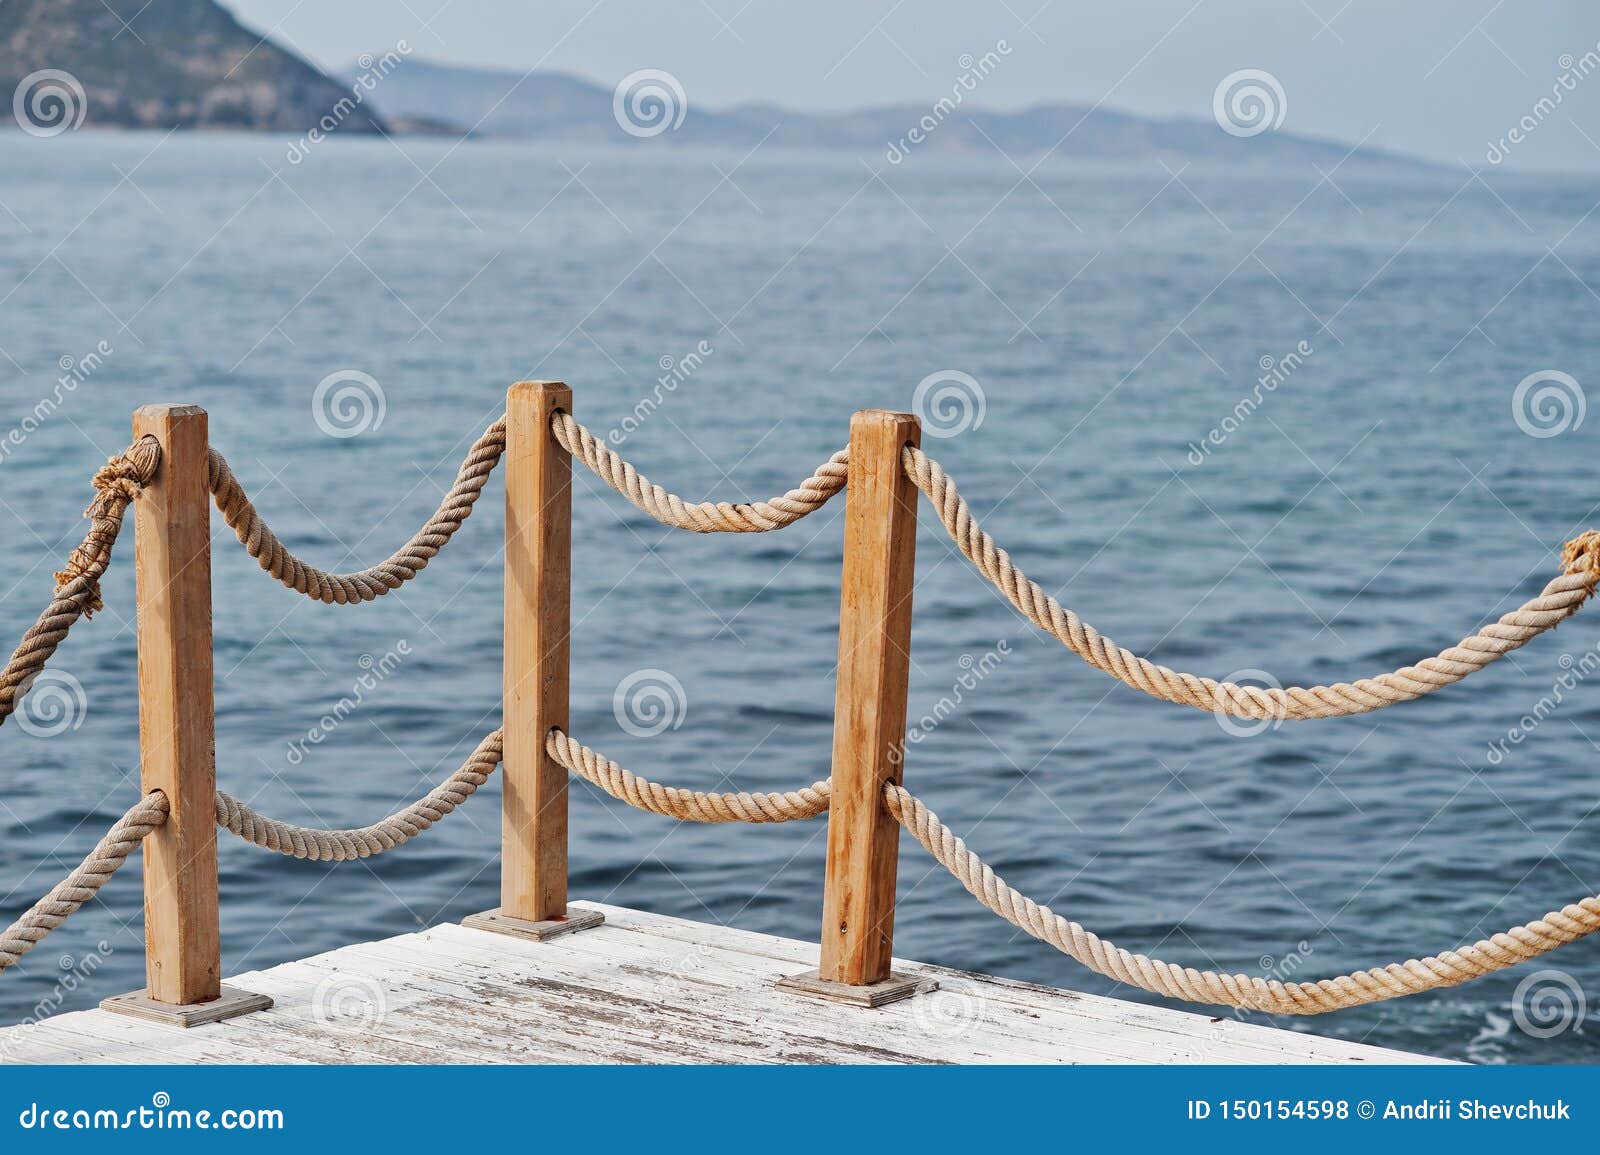 Banister Railing on Marine Rope and Wood Turkey Mediterranean Sea